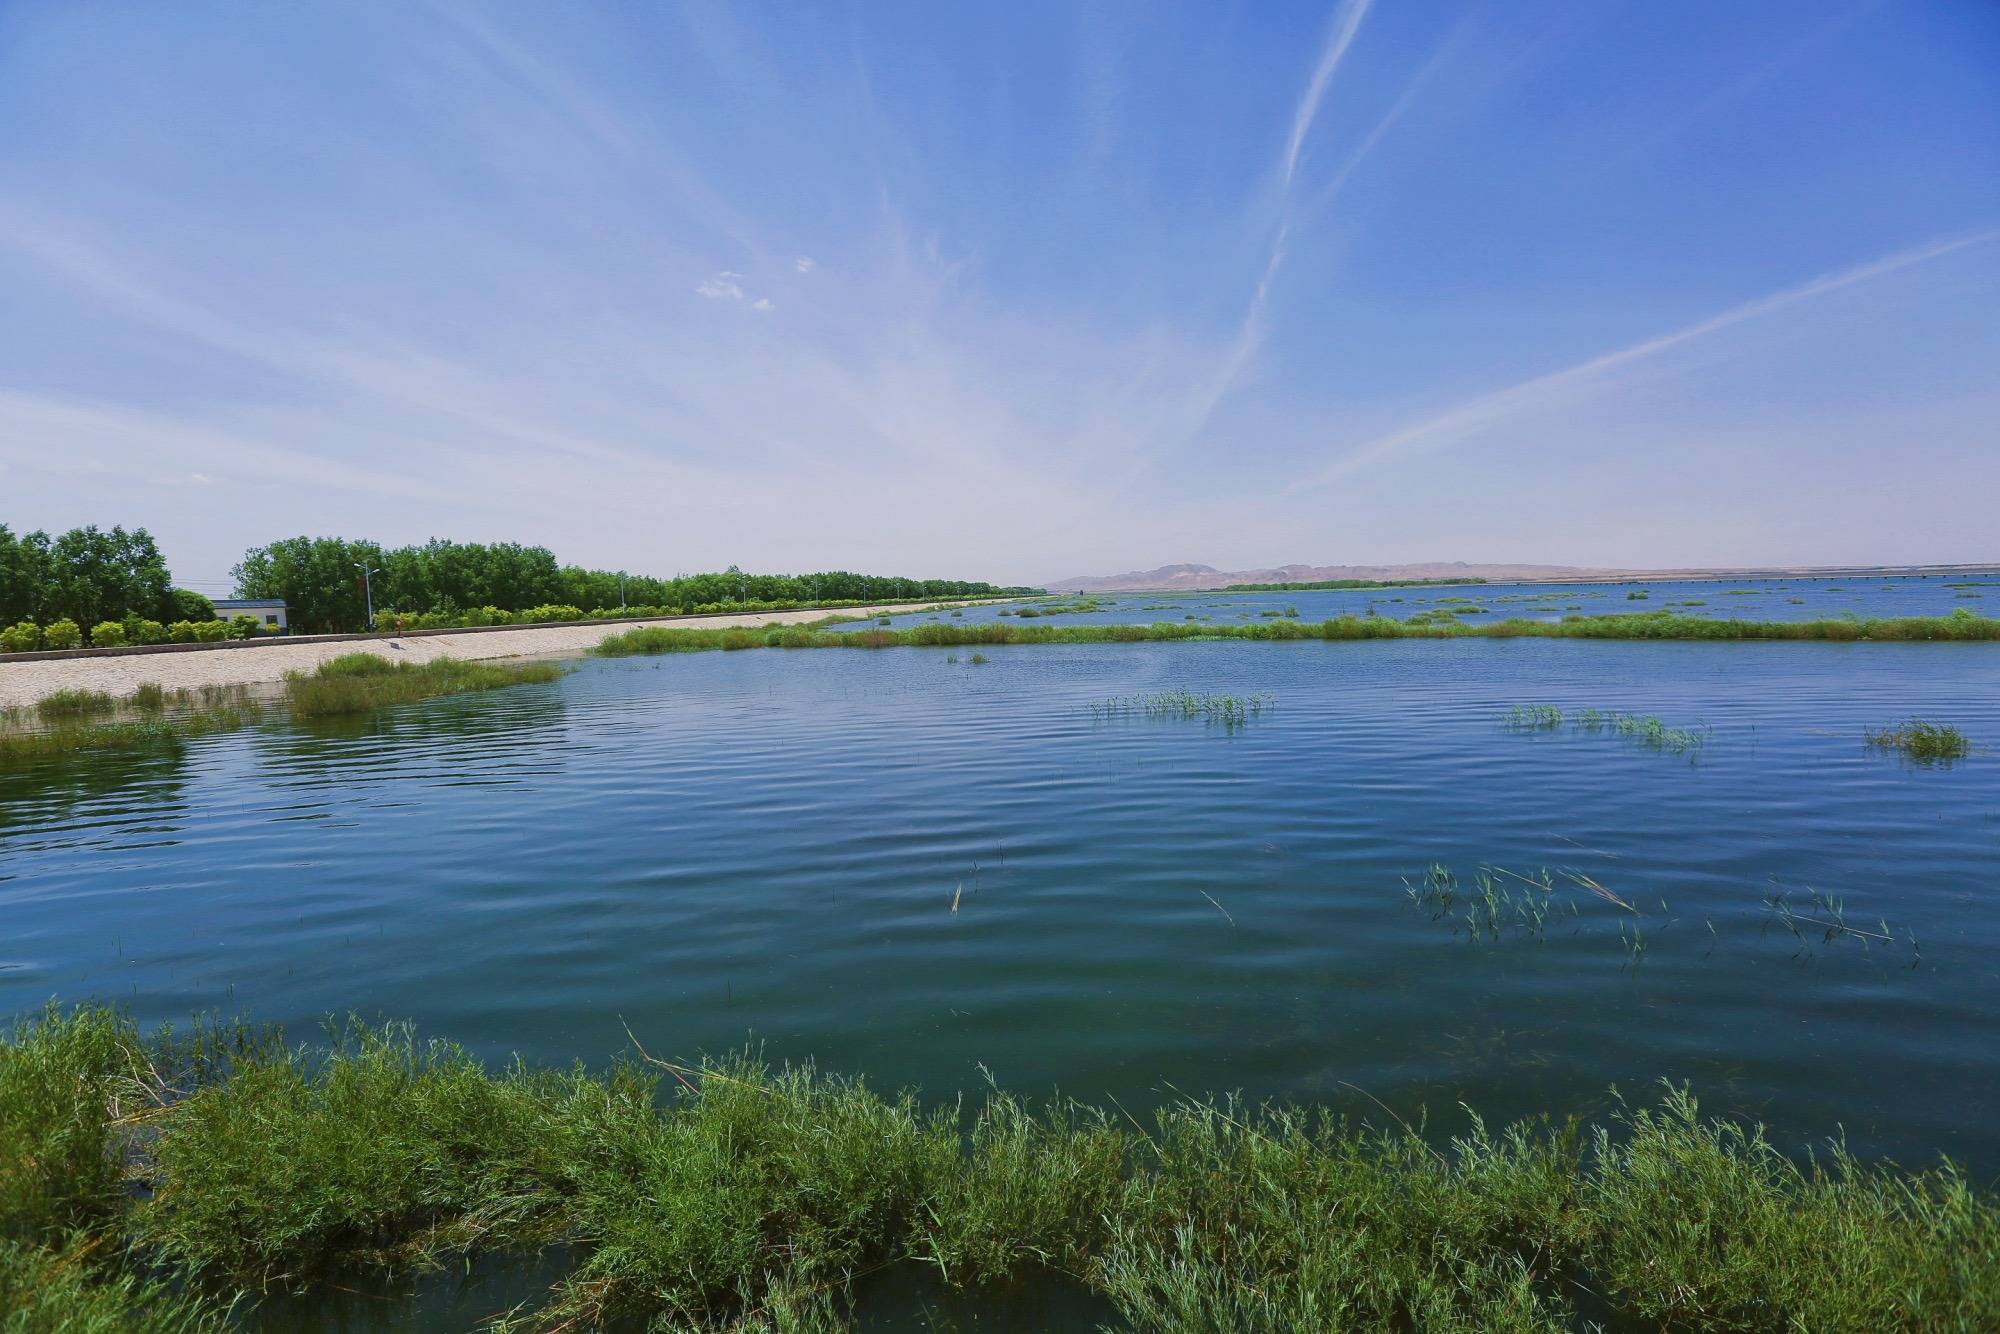 甘肃武威红崖山水库,碧波荡漾,环境优美,是大漠中的水鸟天堂